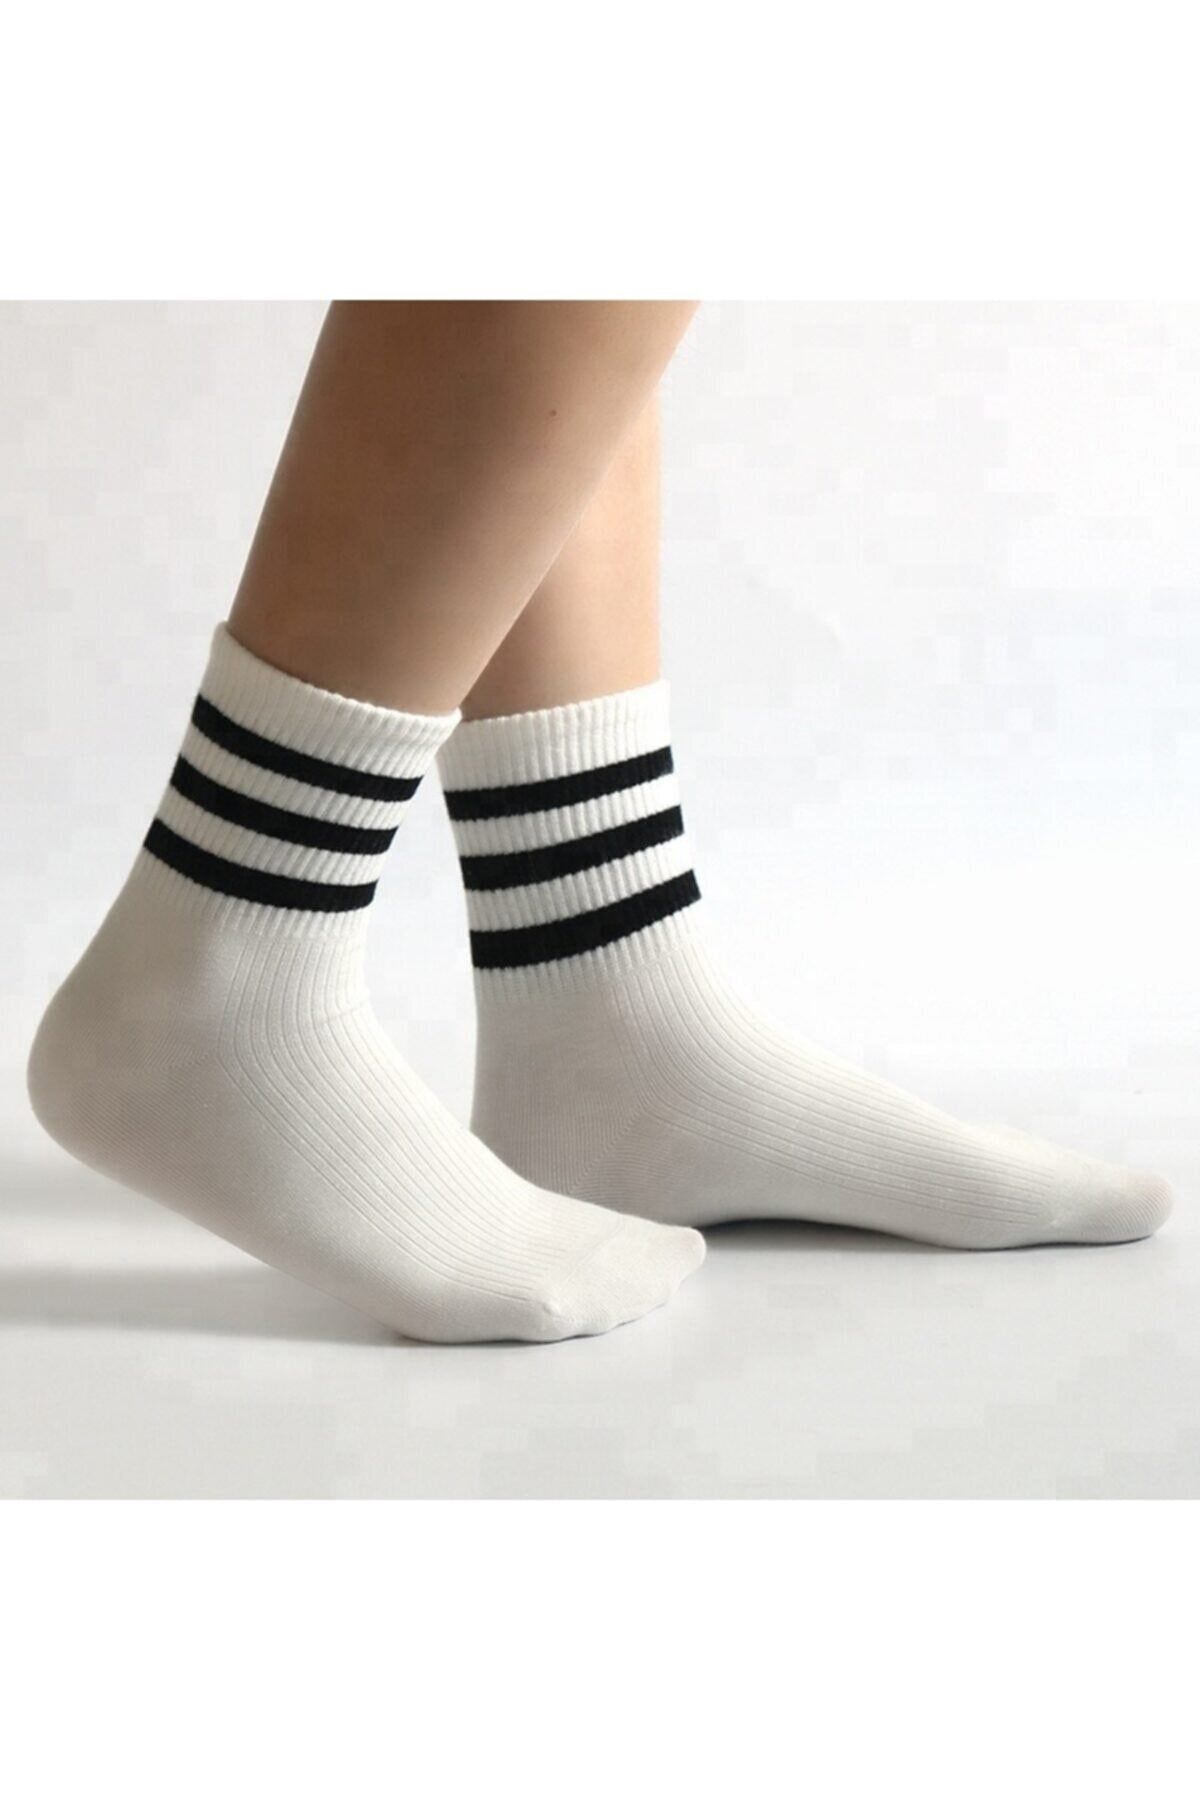 pazariz Beyaz Patik Çorap 6 Adet